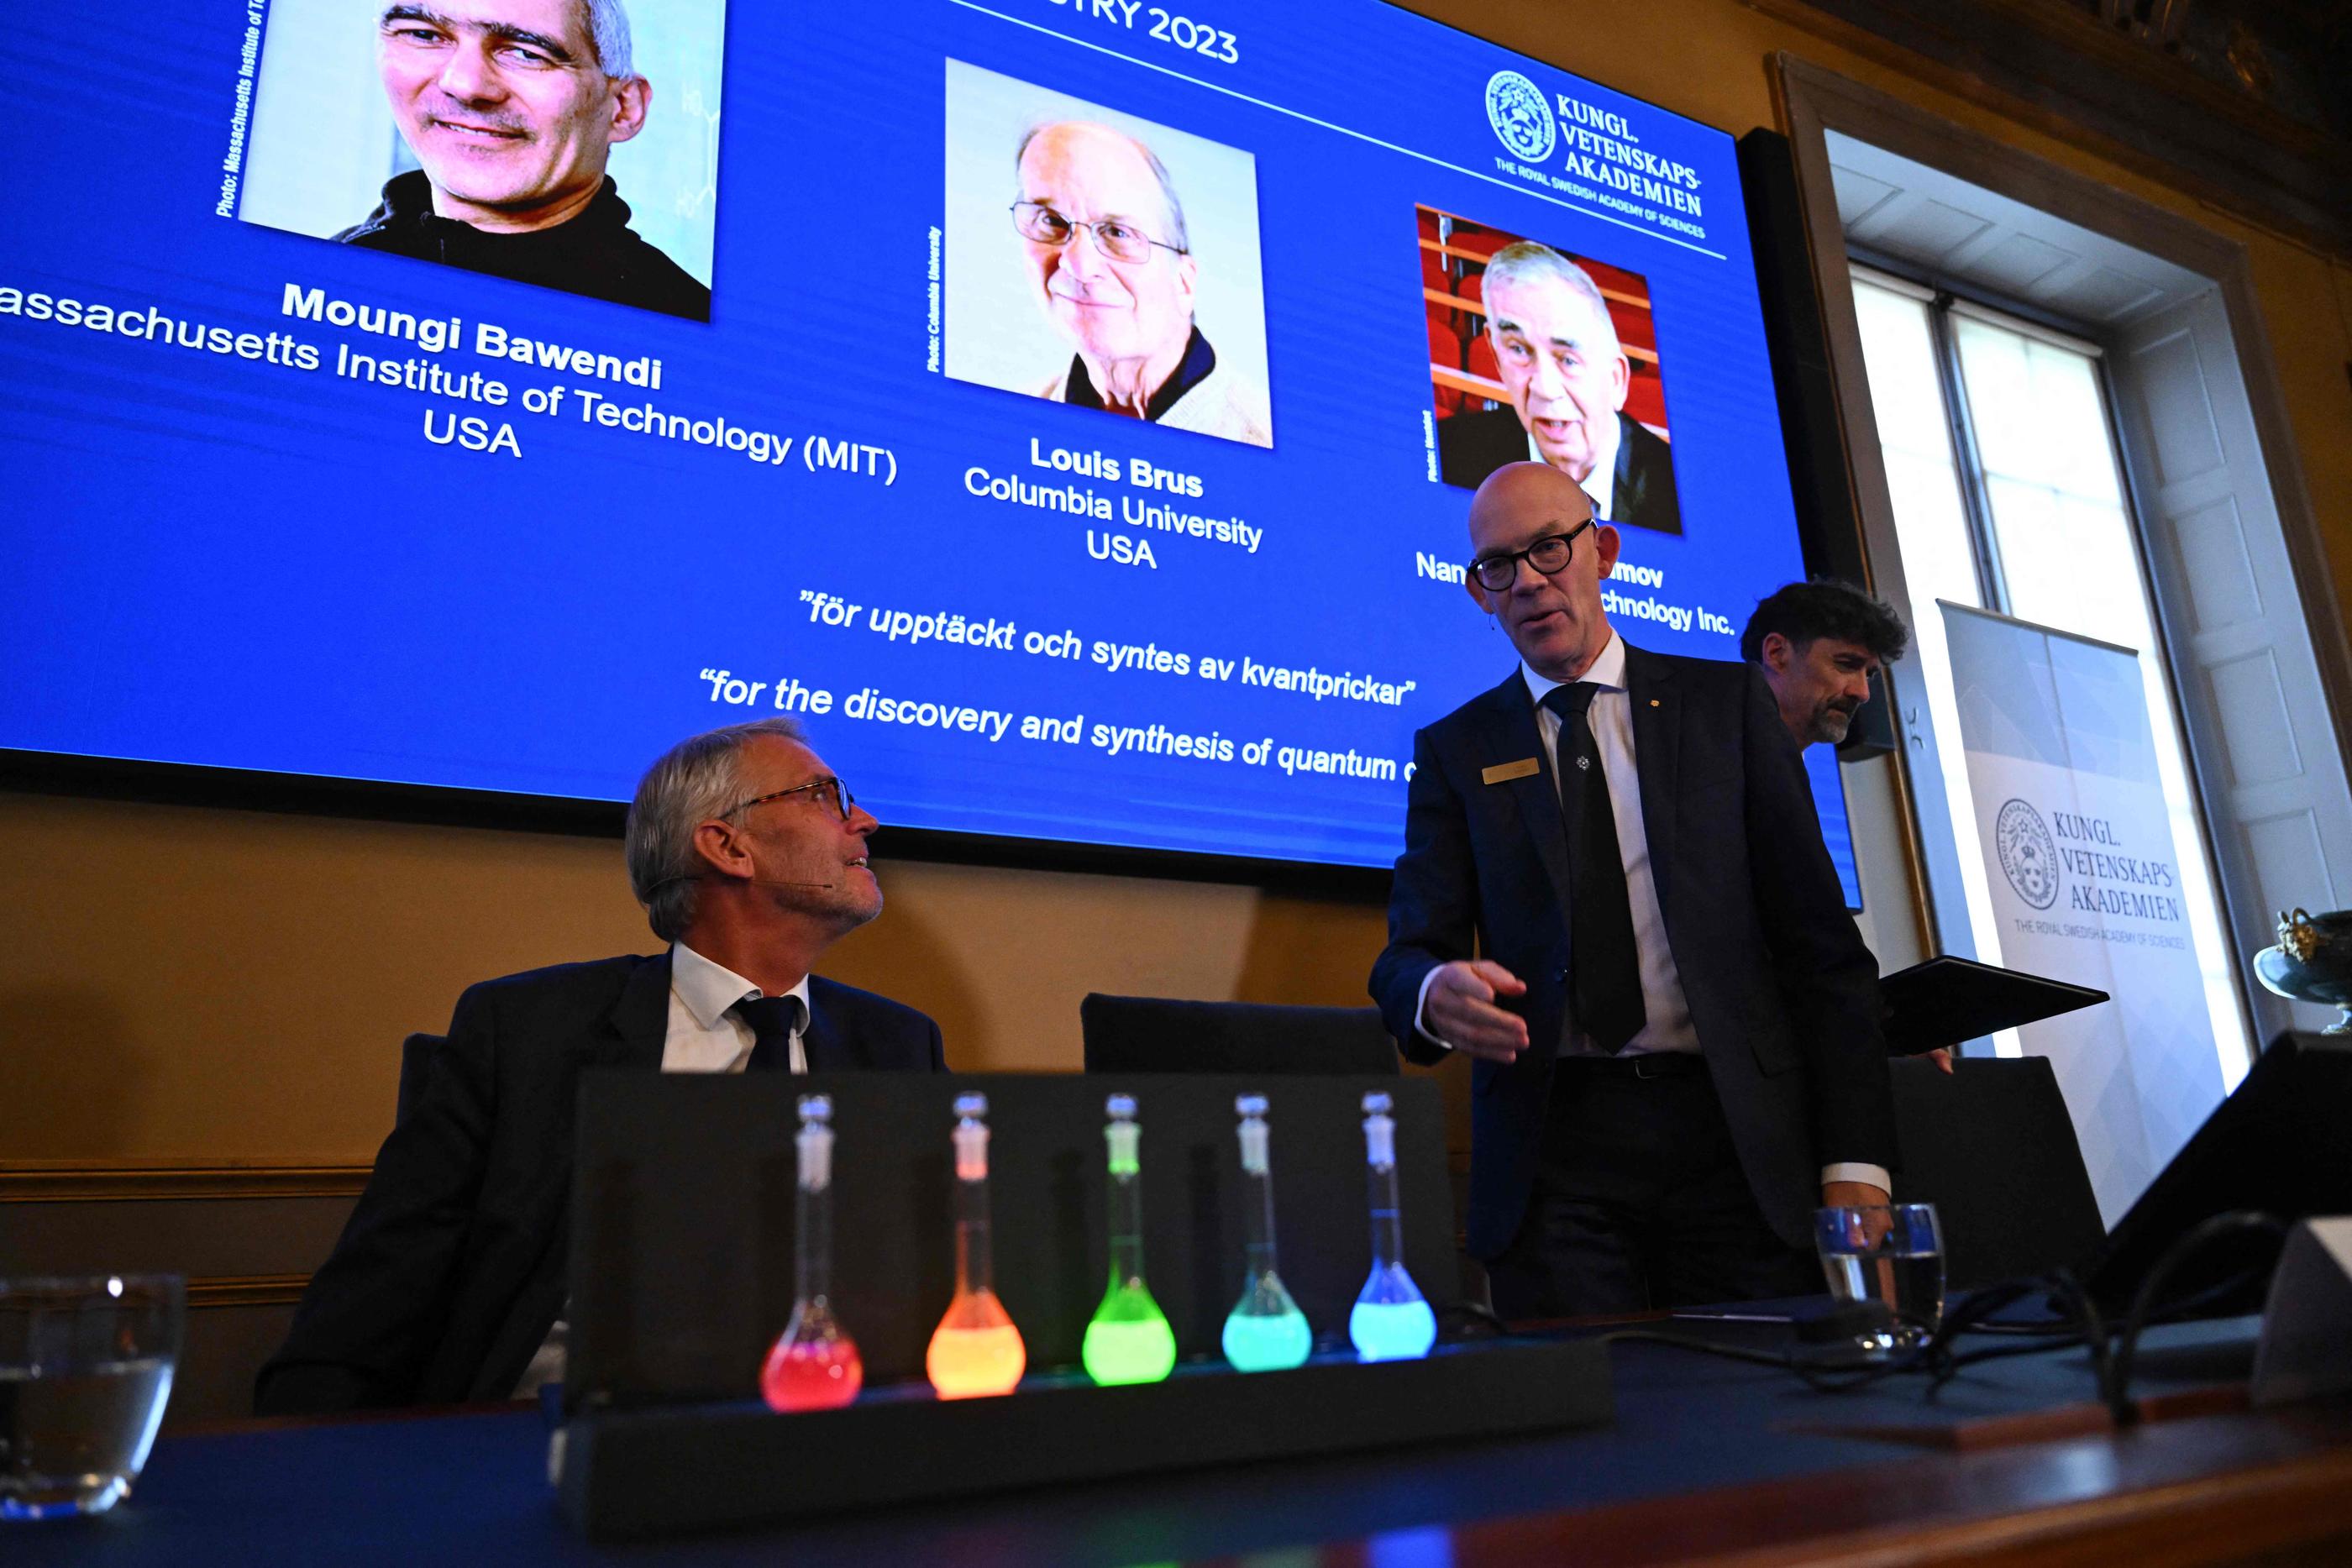 Le secrétaire général de l'Académie royale suédoise des sciences Hans Ellegren (au milieu) « regrette profondément » que les noms des lauréats du prix Nobel de chimie ont été dévoilés avant l'annonce officielle. AFP/Jonathan NACKSTRAND